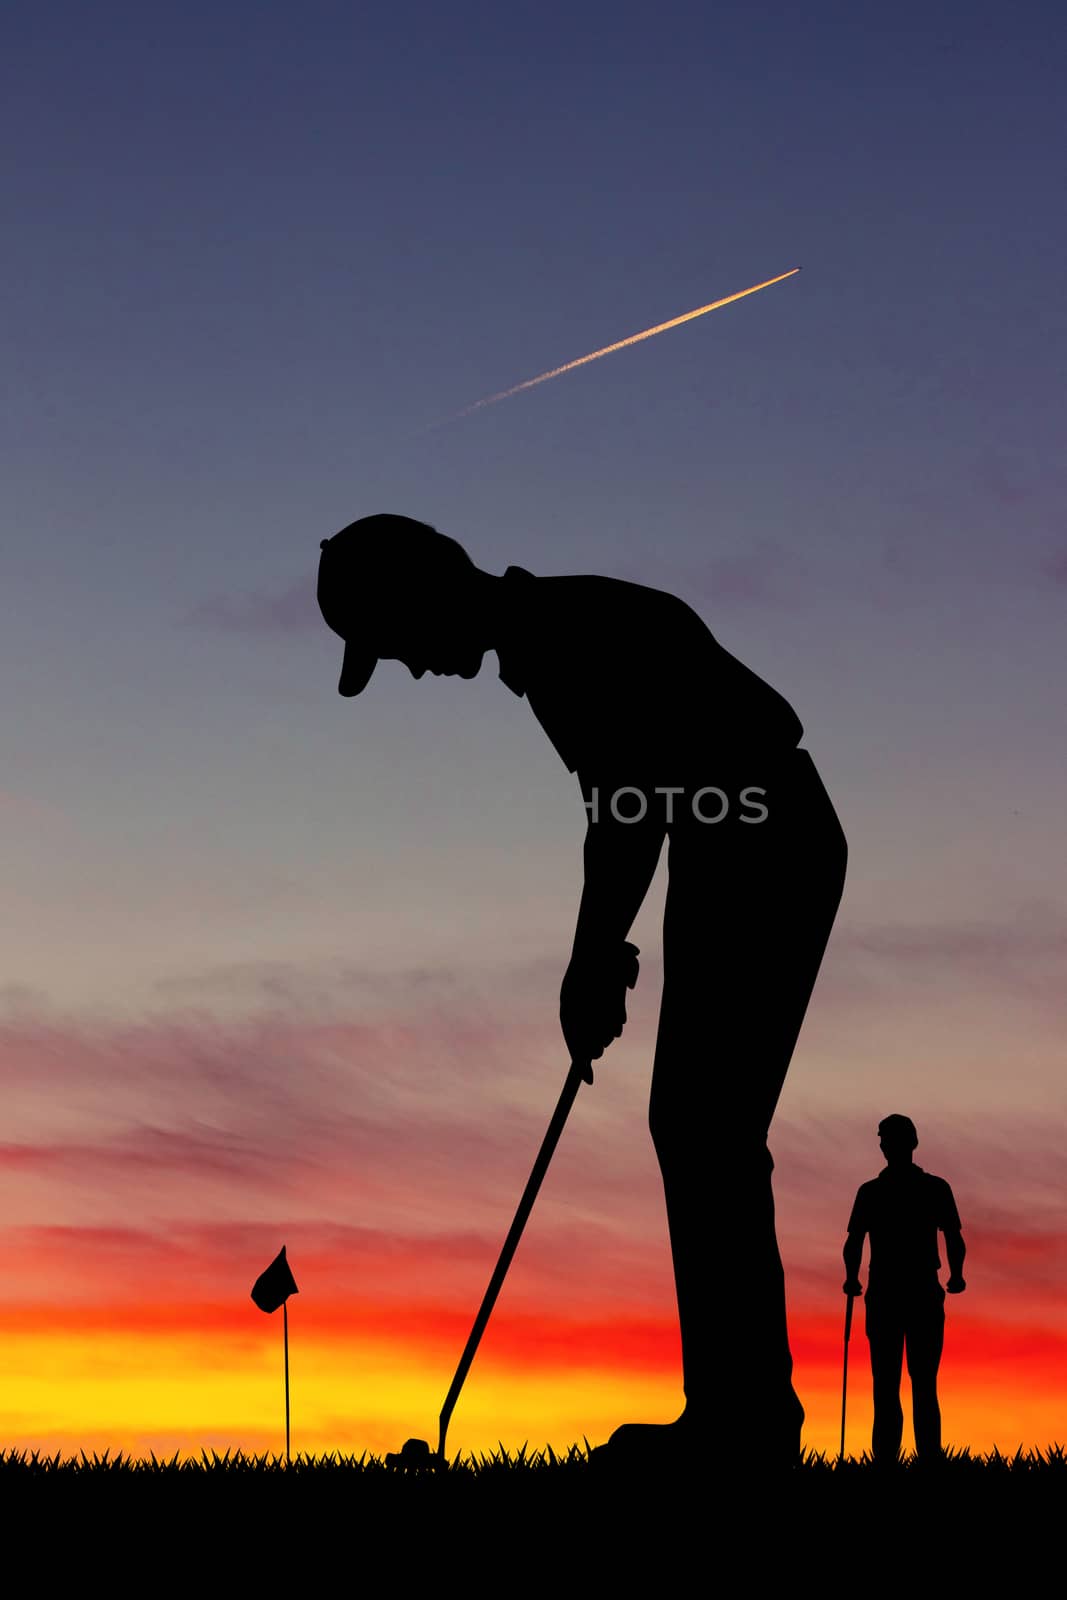 men play golf by adrenalina